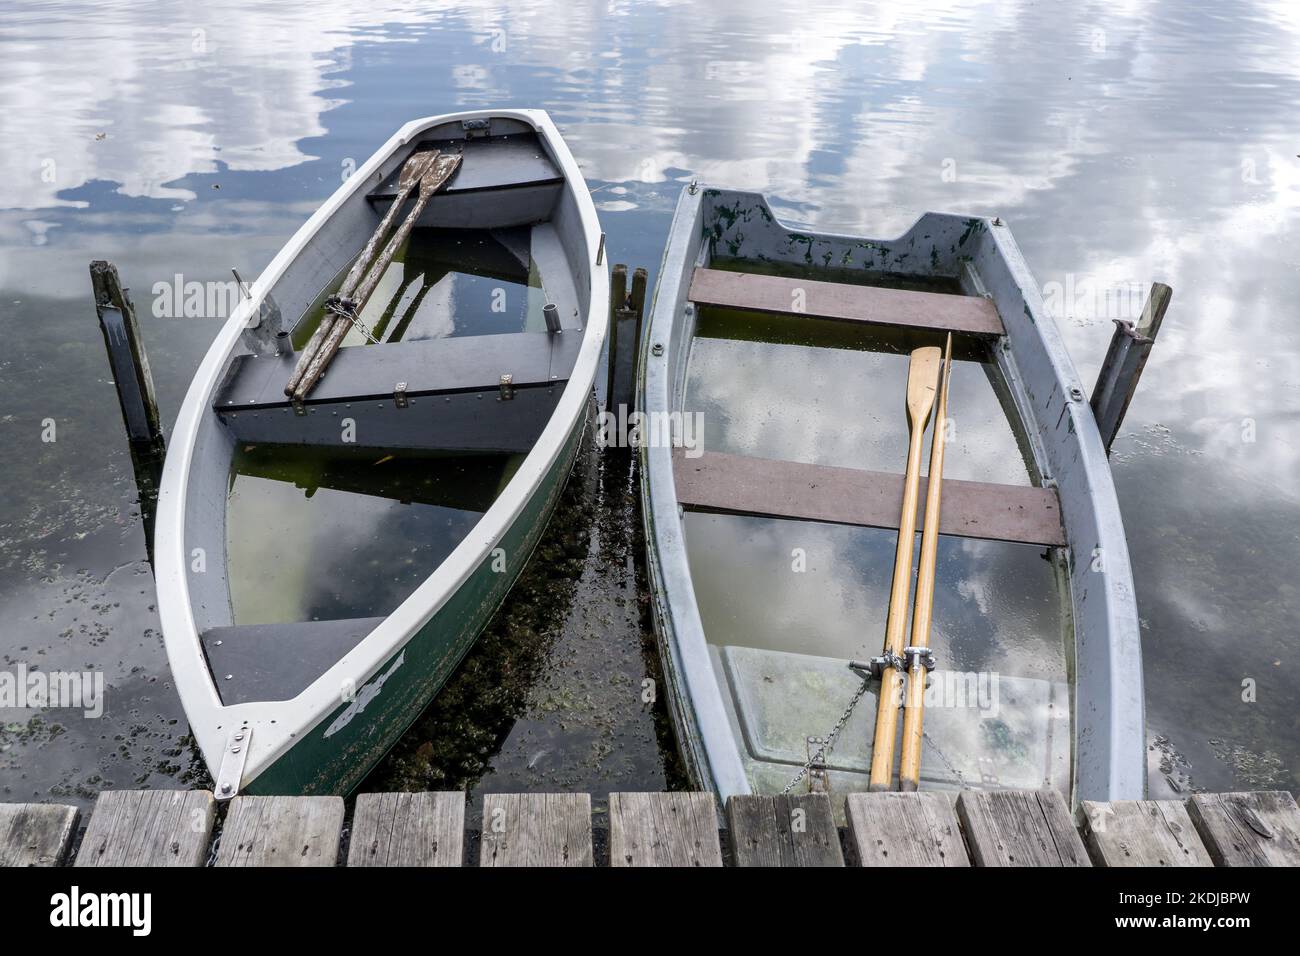 due piccole barche a remi naufragate piene d'acqua su un lago Foto Stock